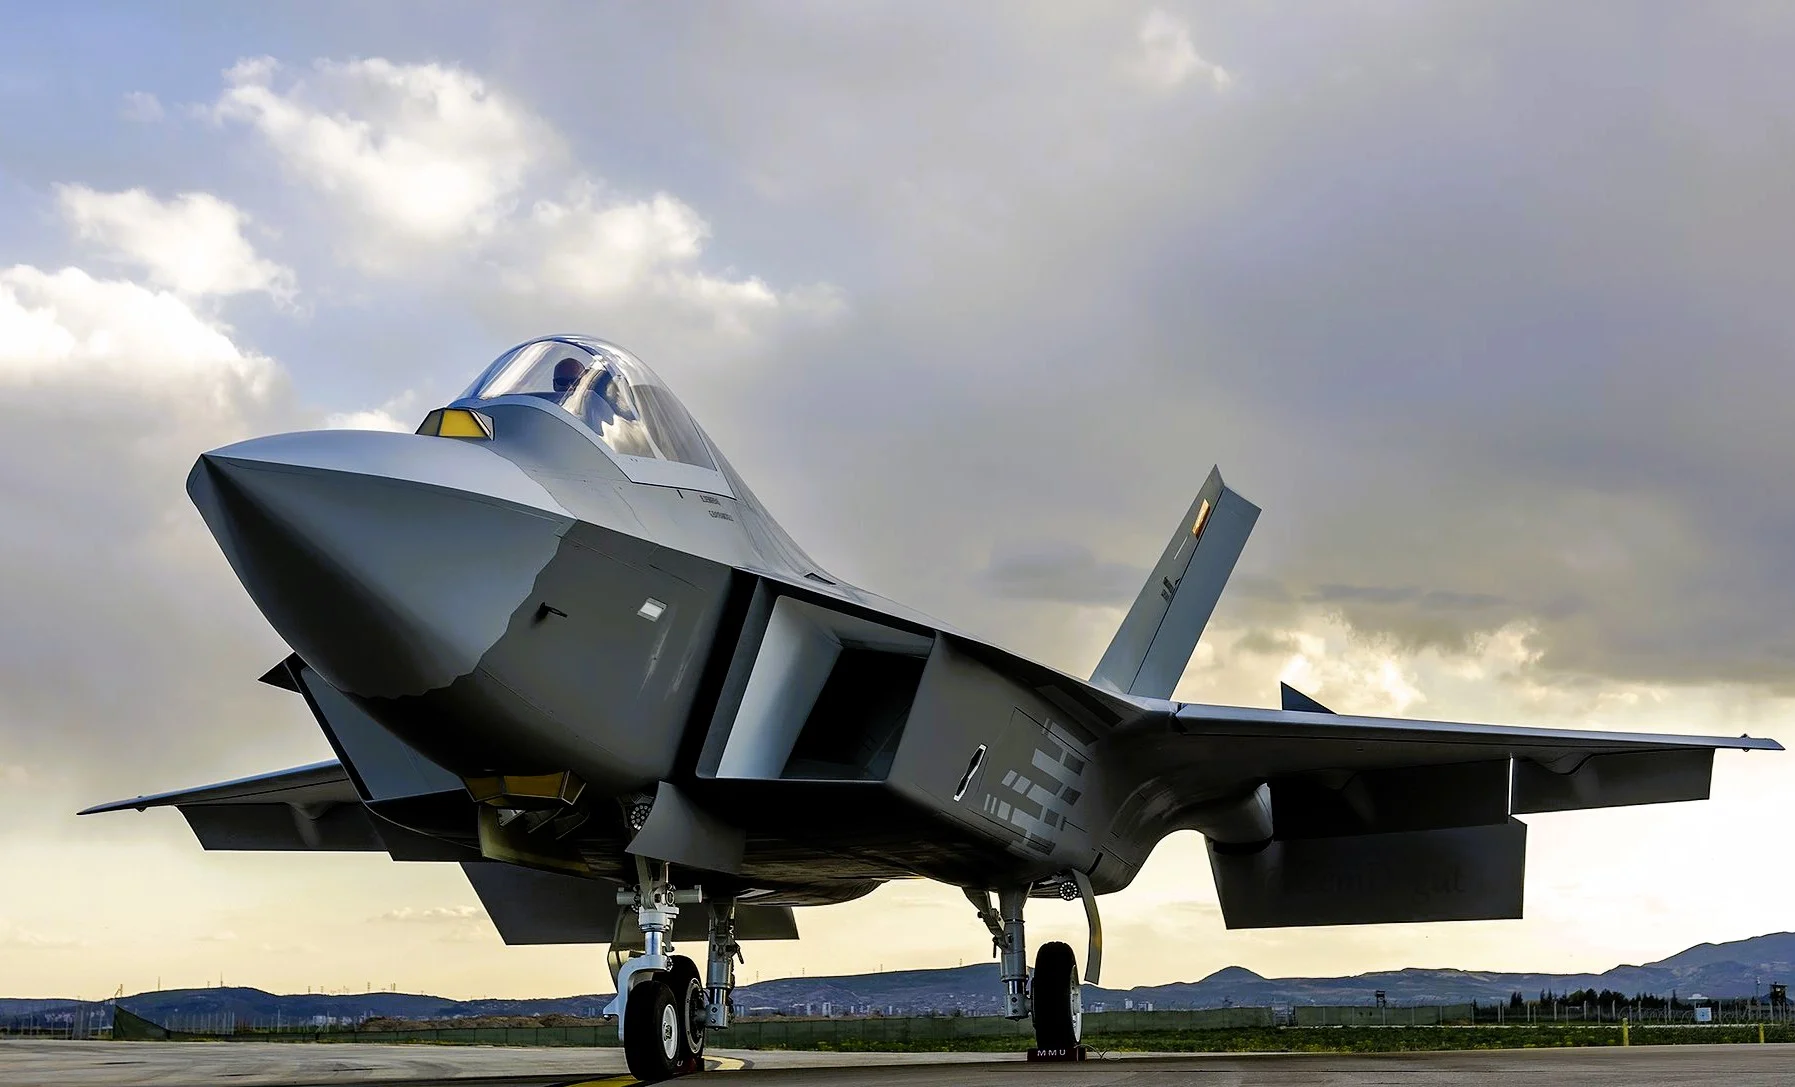 Die Türkei plant den Bau von 300 KAAN-Kampfflugzeugen der 5. Generation, und die Ukraine möchte einige davon kaufen